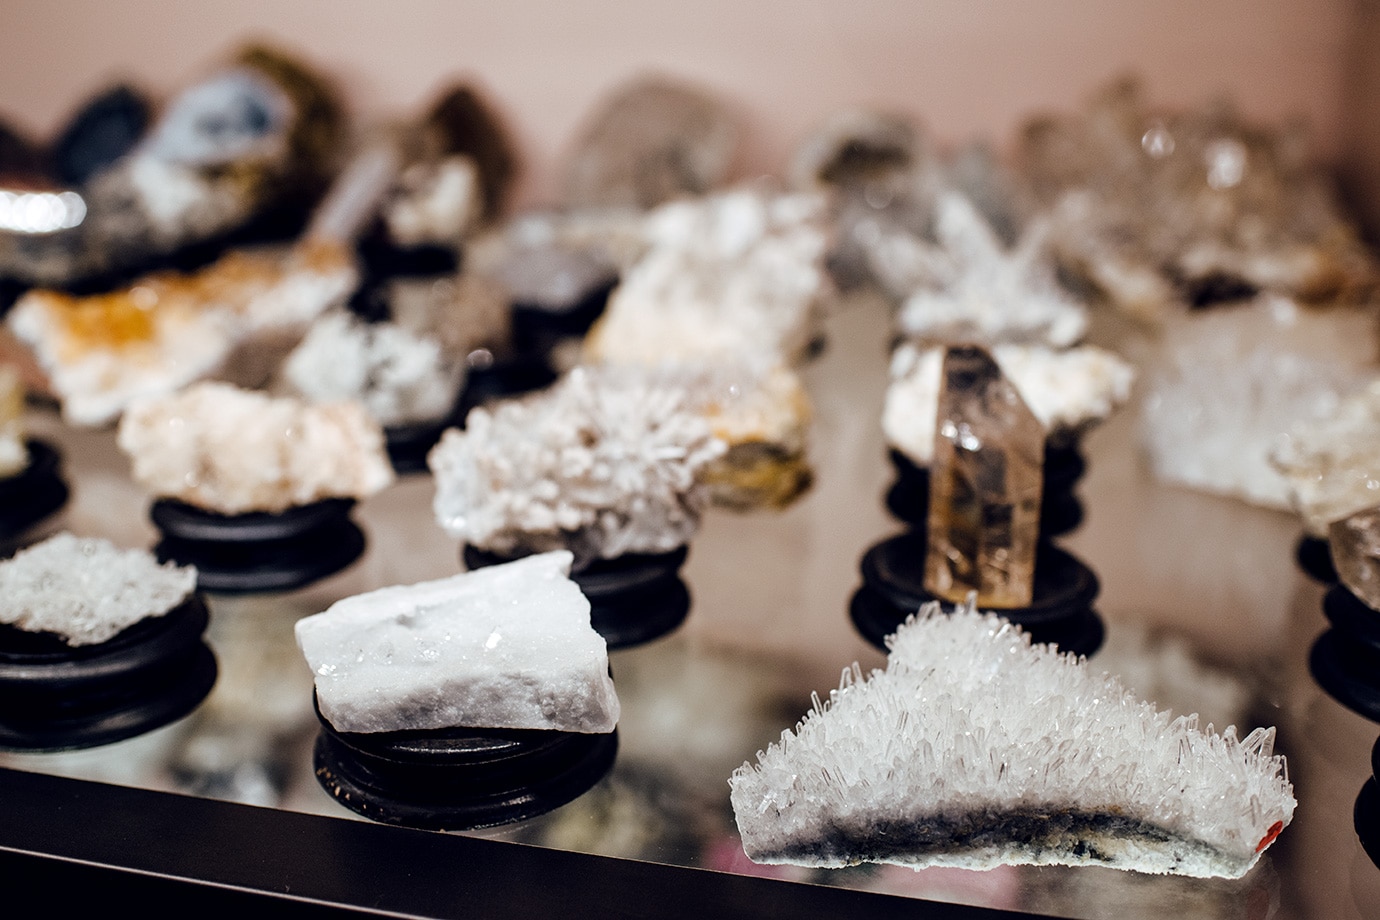 Musée d'histoire naturelle de Venise: collection de cristaux